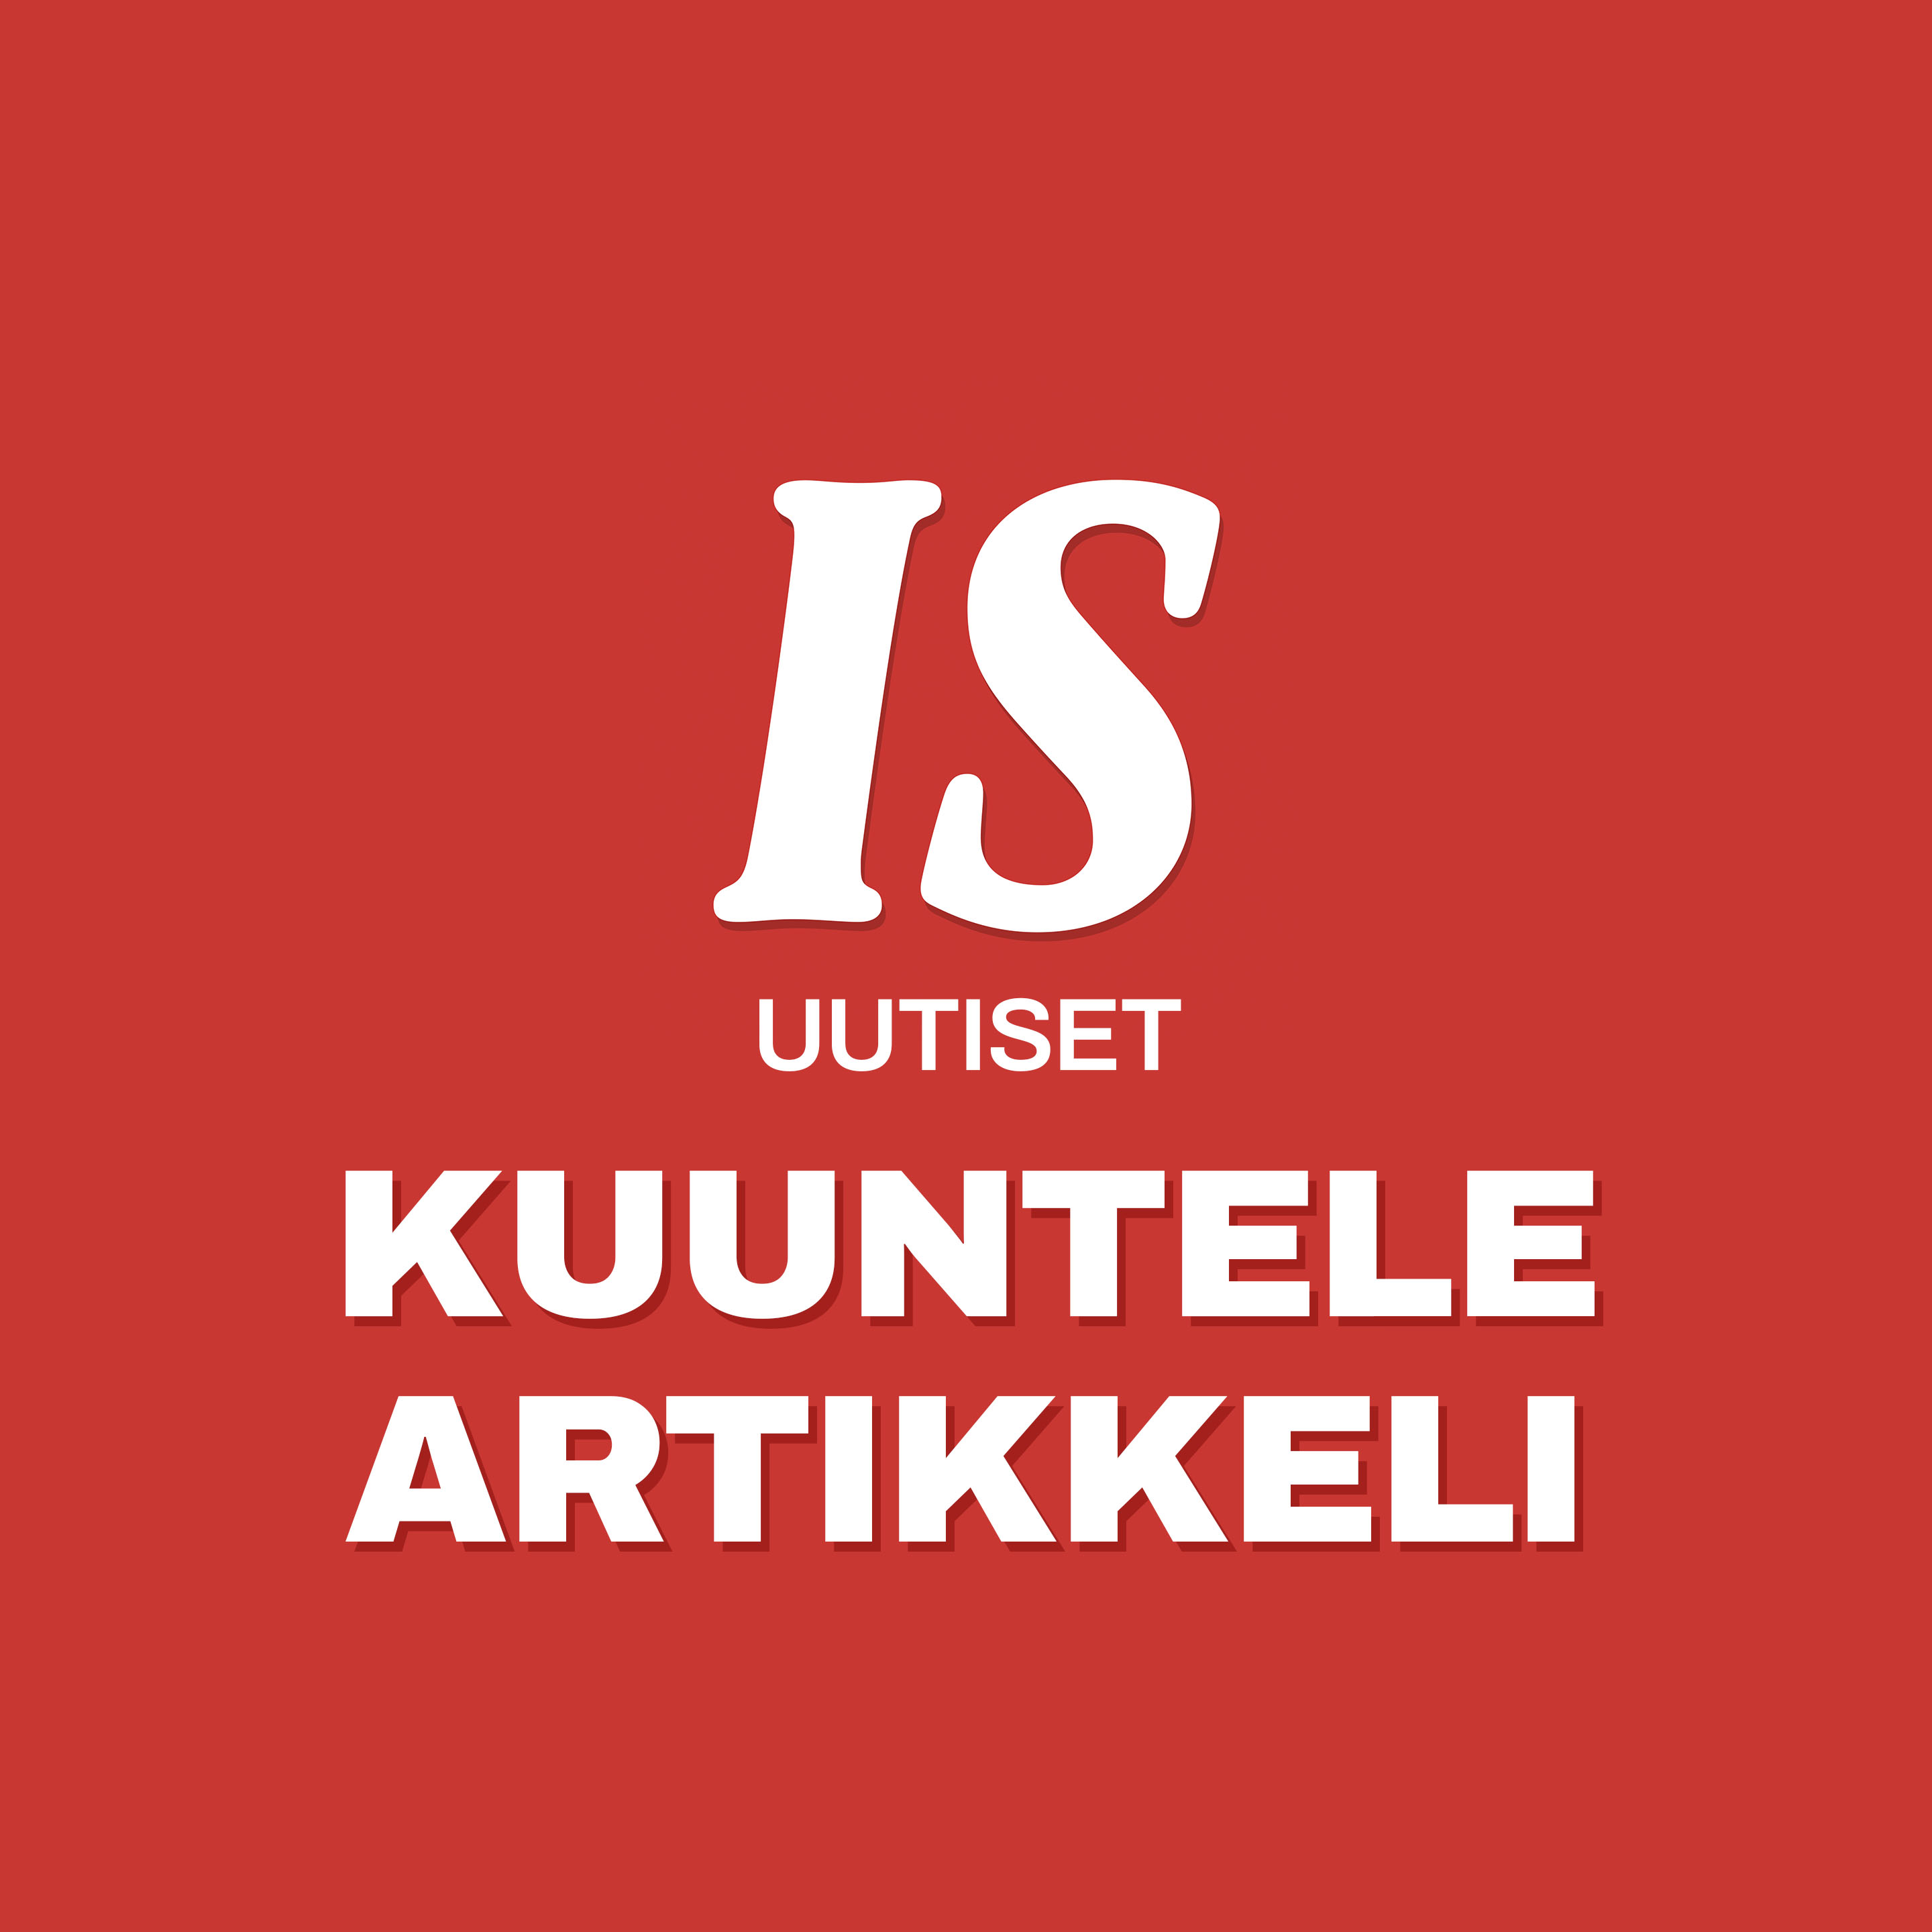 Kansalaisuuden ehtojen kiristämisestä kova leimahdus – kokoomuksen Vestman piikittelee oppositiota: ”Eivät ole edes lukeneet lakiesitystä”